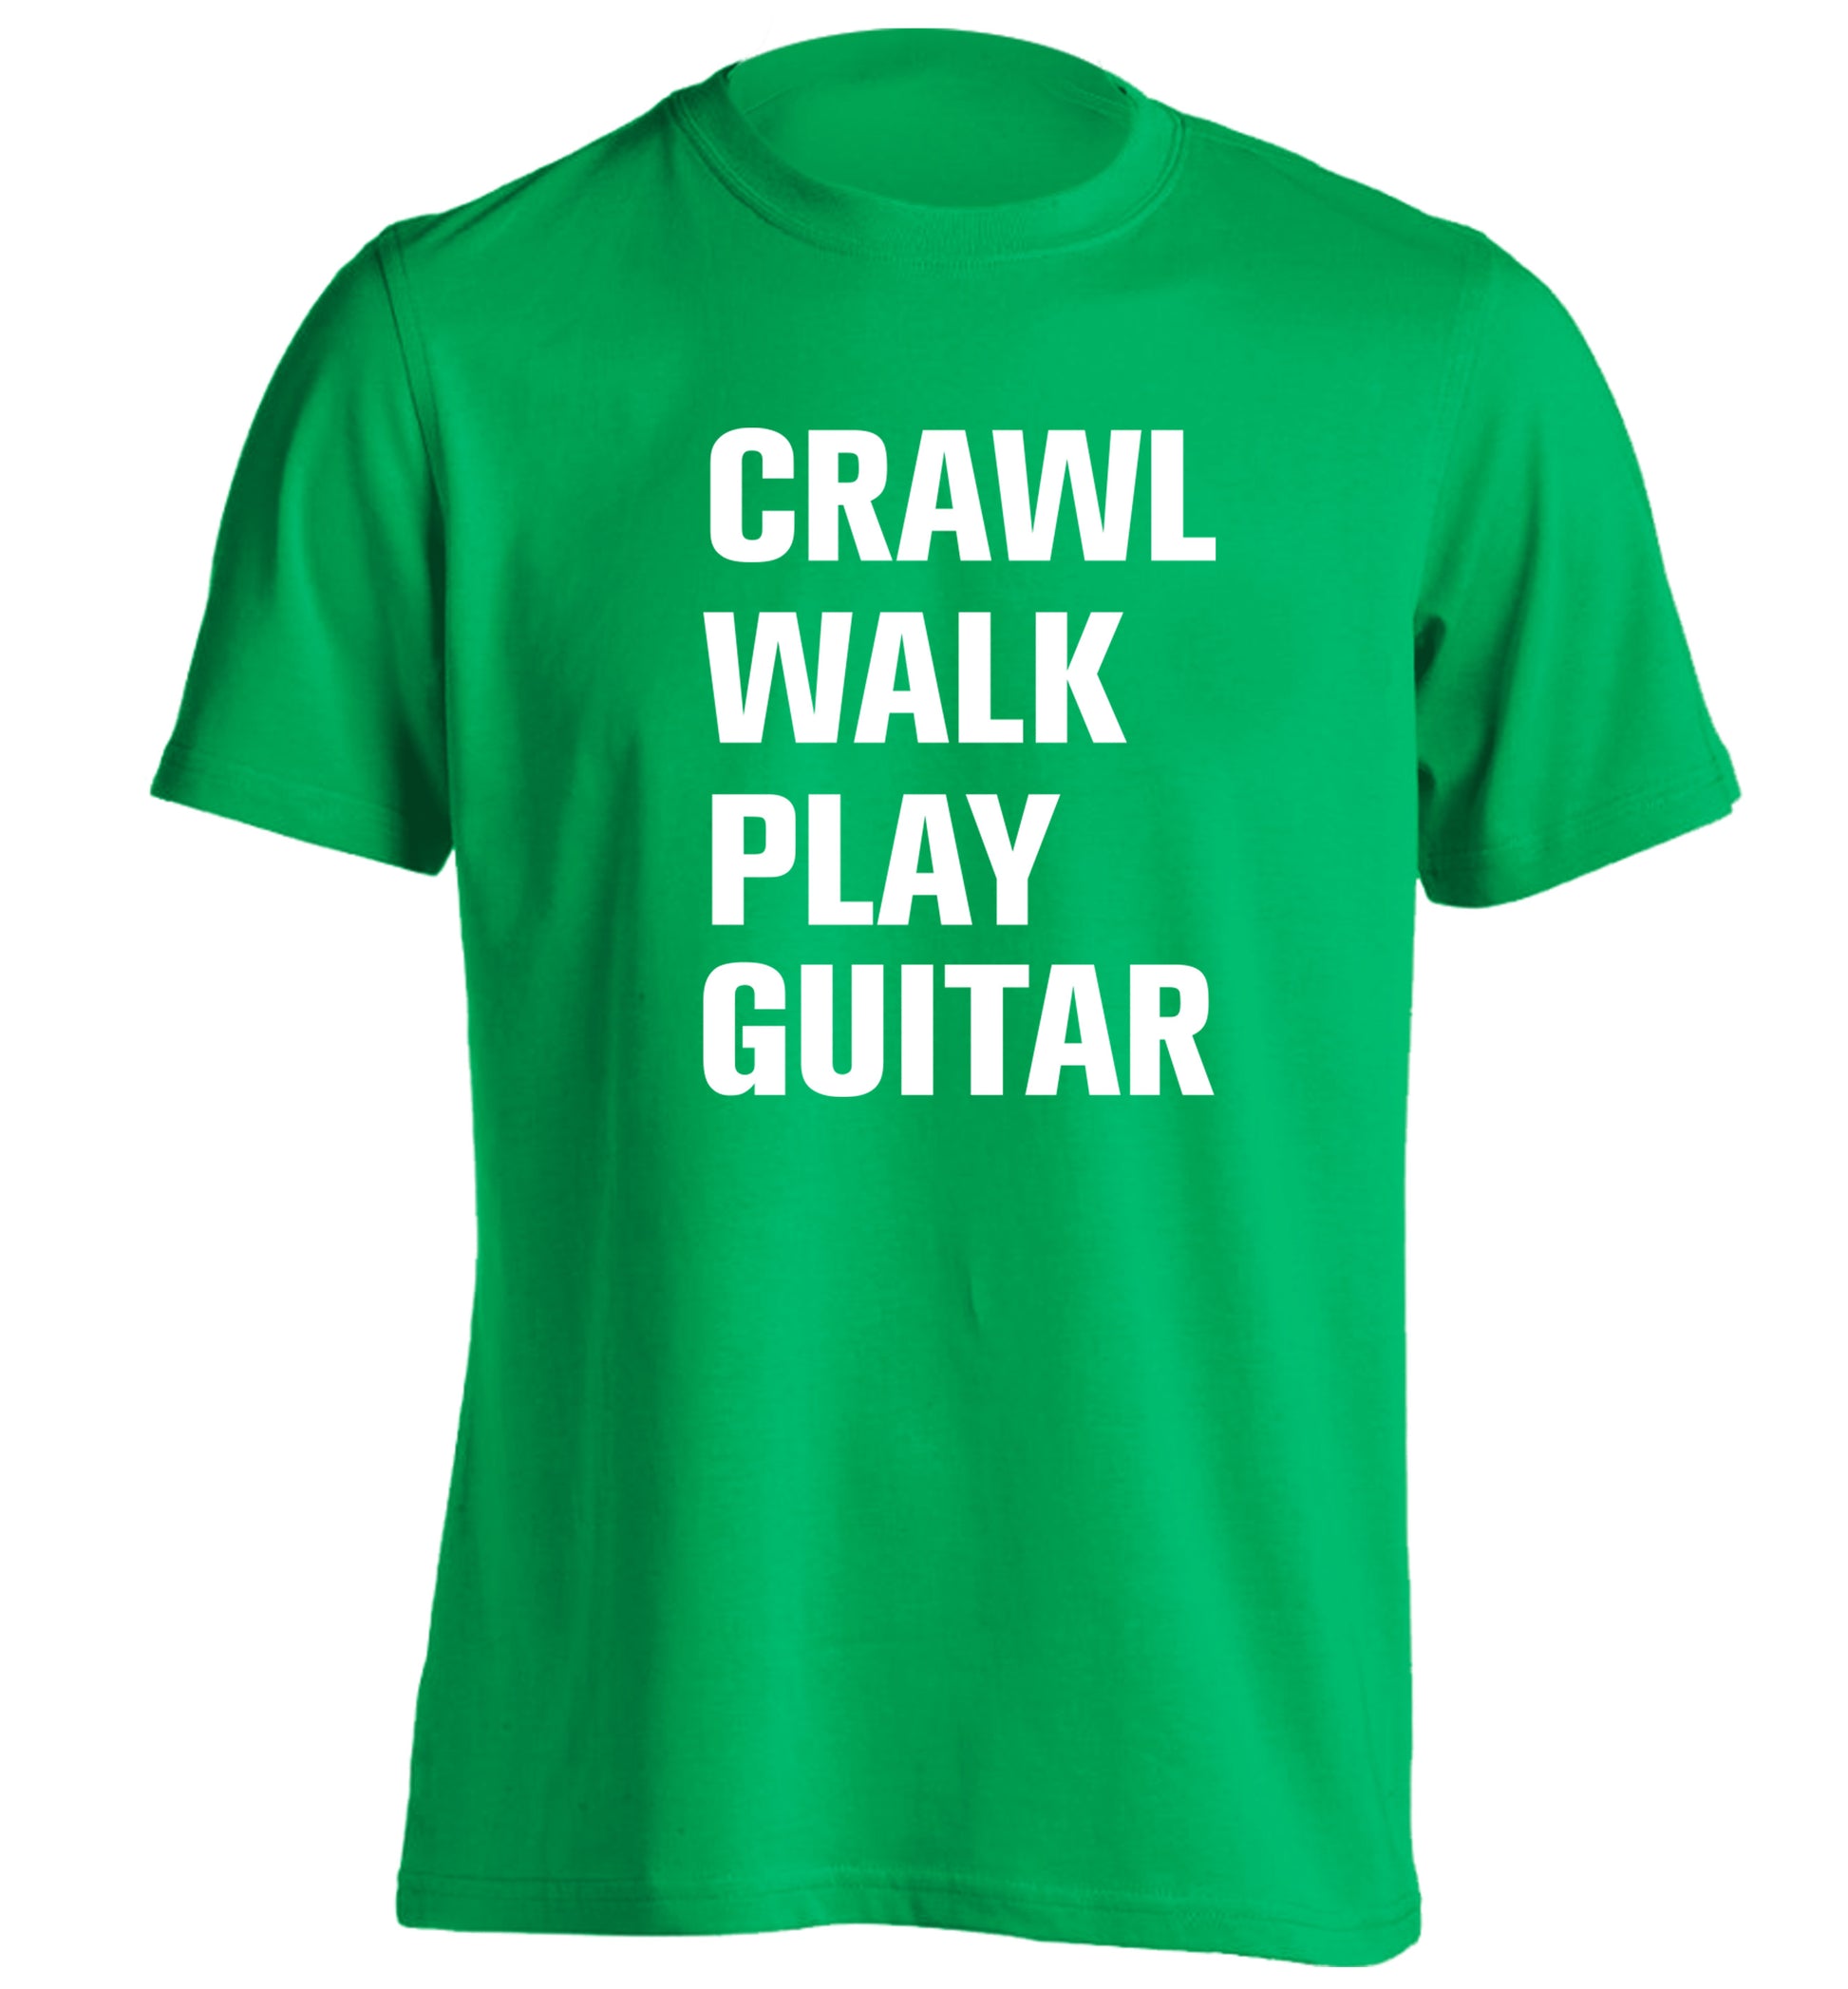 Crawl walk play guitar adults unisex green Tshirt 2XL